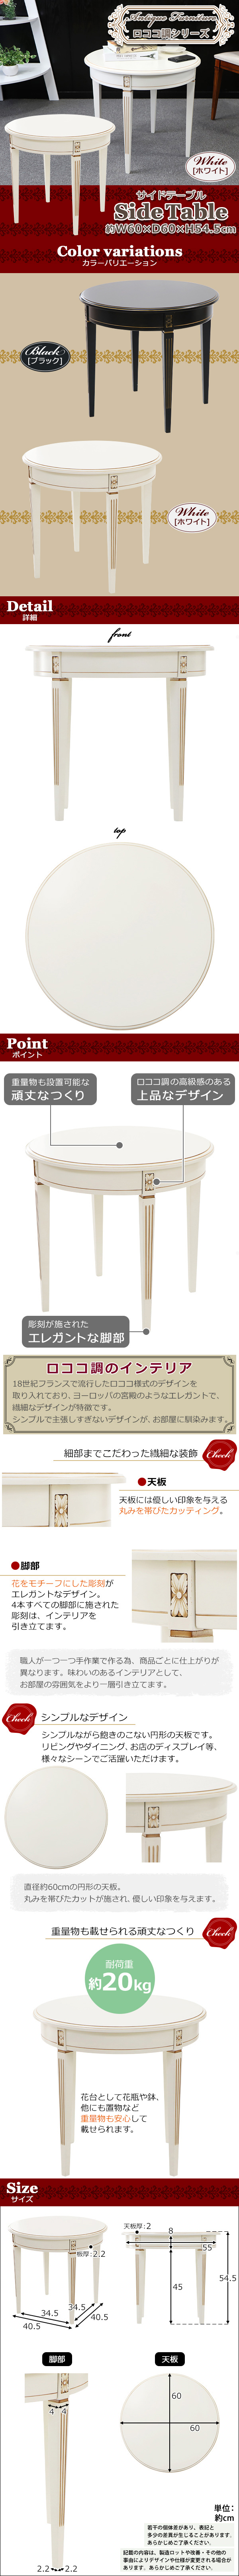 安い再入荷送料無料 ロココ調 サイドテーブル ホワイト 約W60×約D60×約H54.5(cm) ラウンドテーブル 木製 ロココ アンティーク クラシック レトロ サイドテーブル